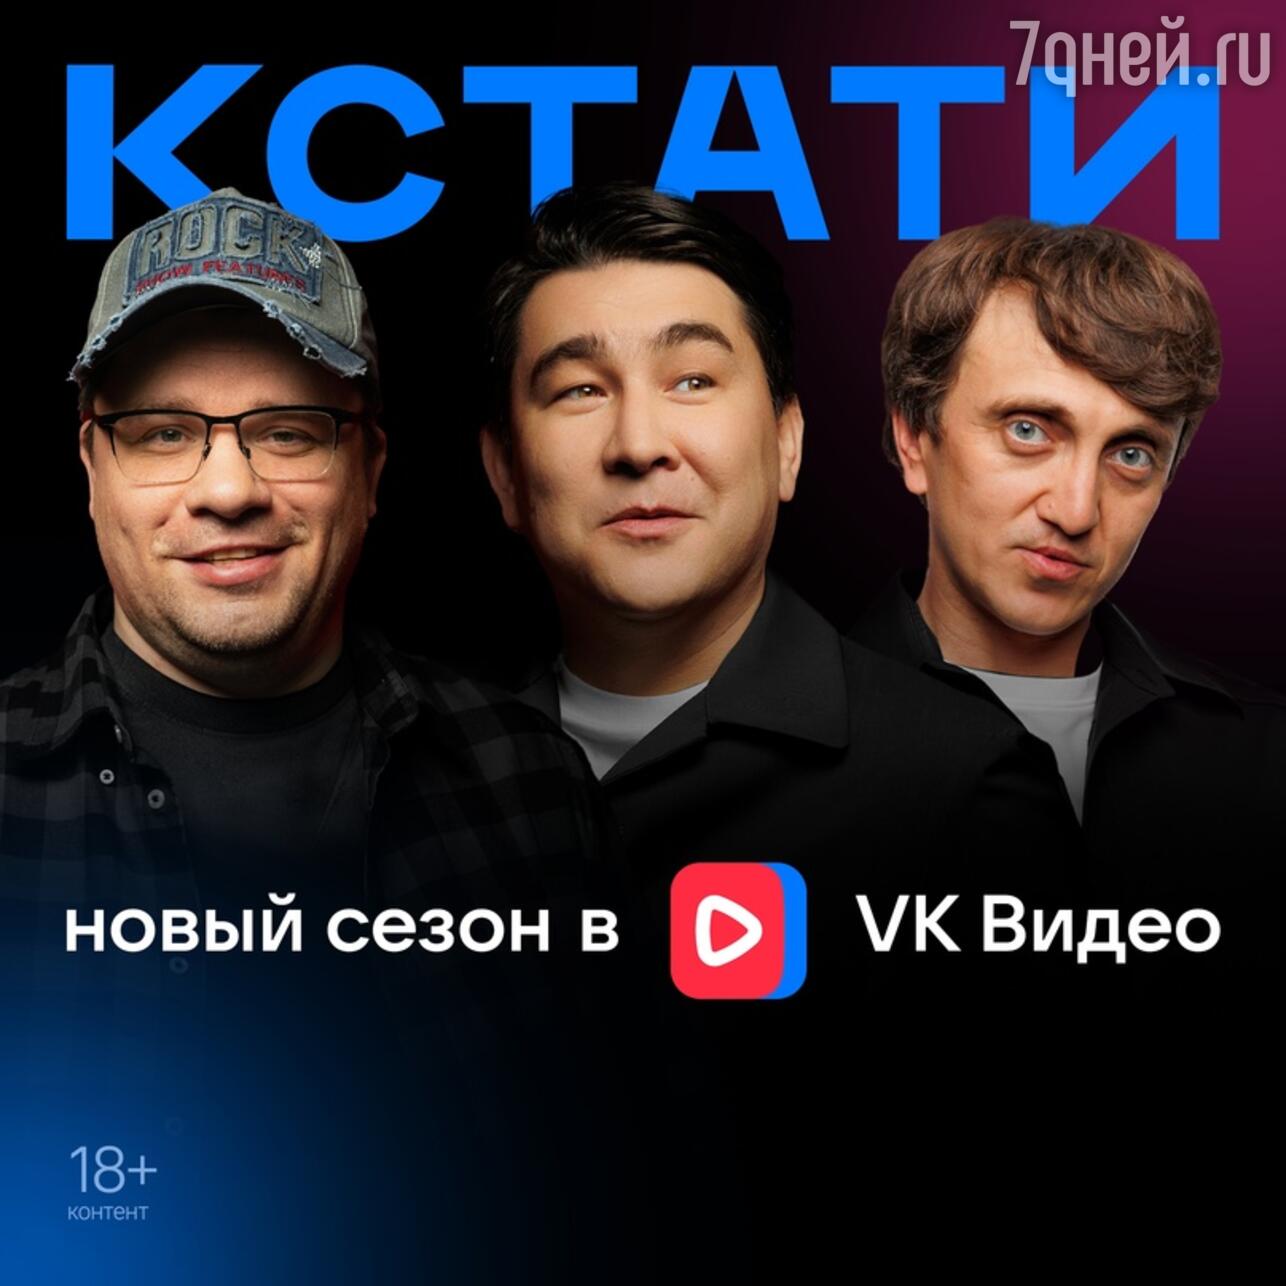 В VK Видео после перерыва возвращается юмористический проект «Кстати» -  7Дней.ру